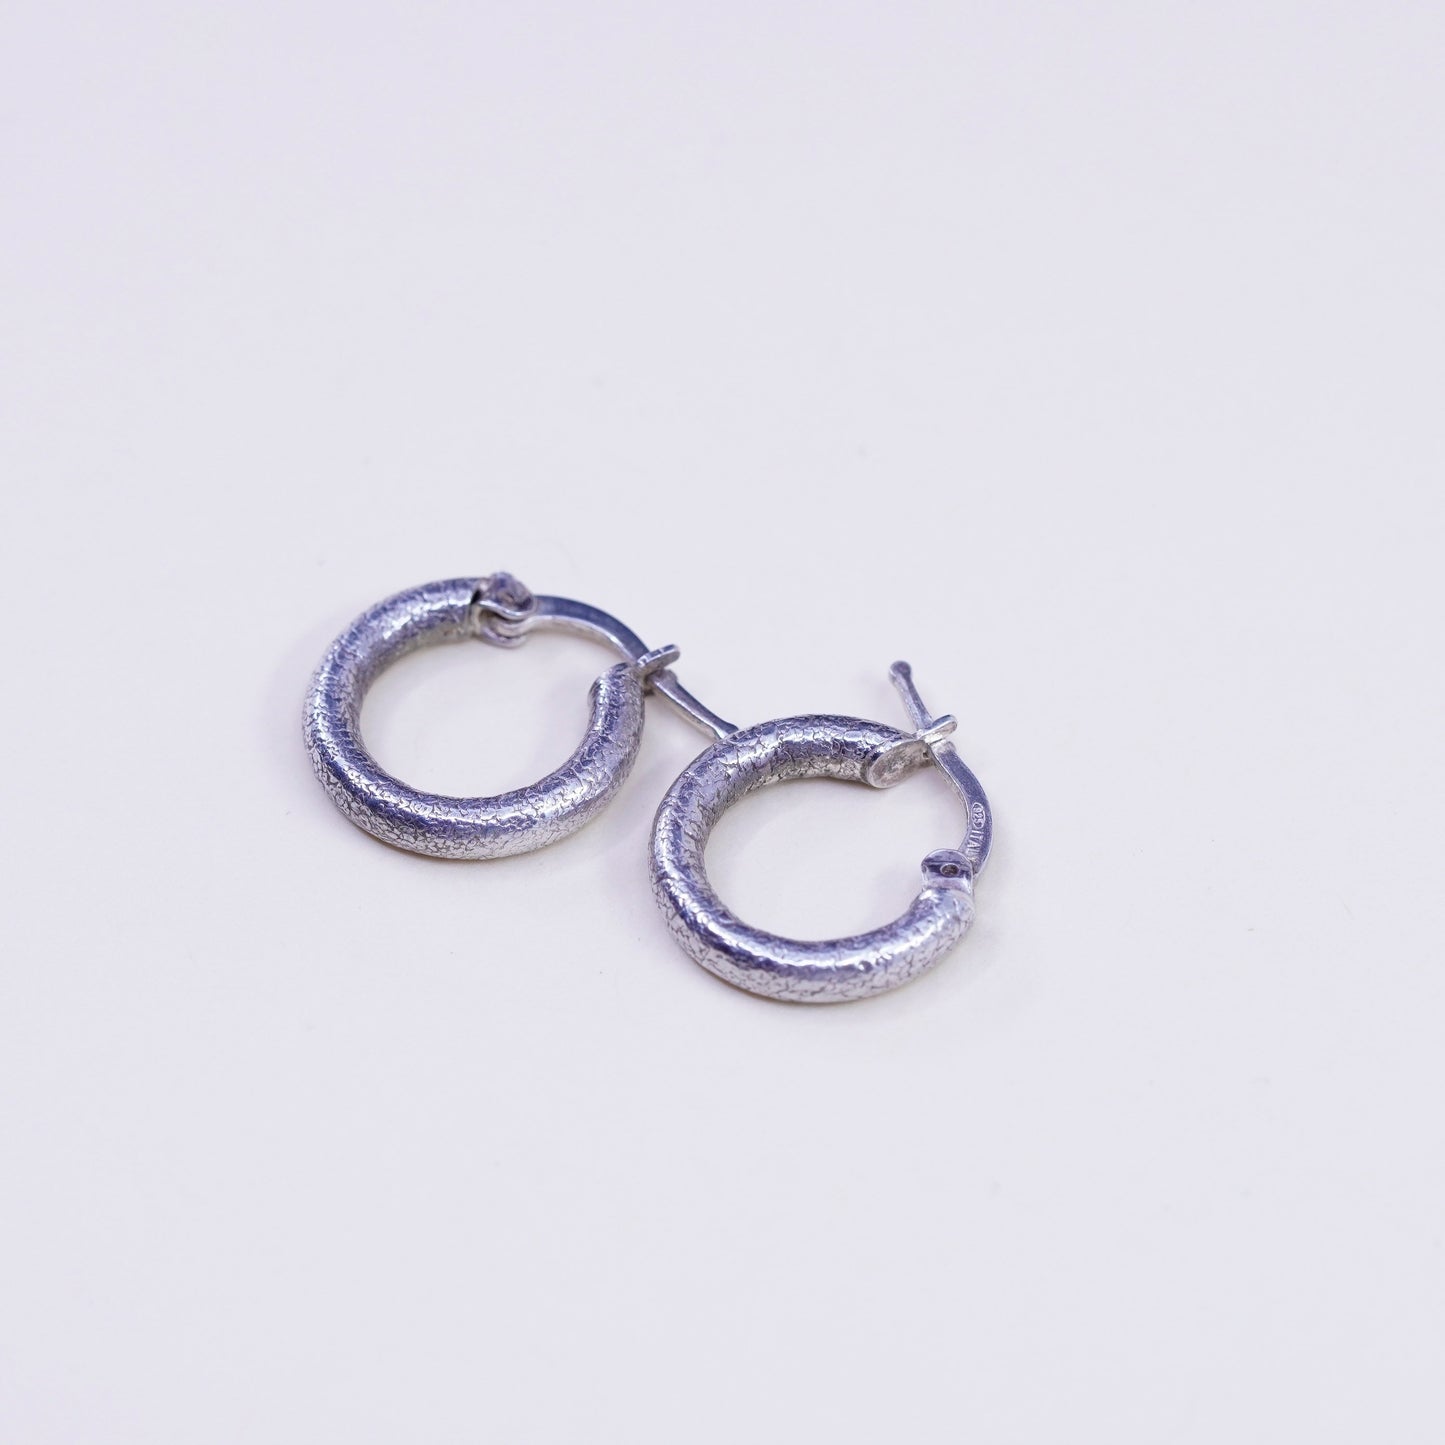 0.5”, Vintage Italy sterling silver loop earrings, textured 925 hoops, huggie